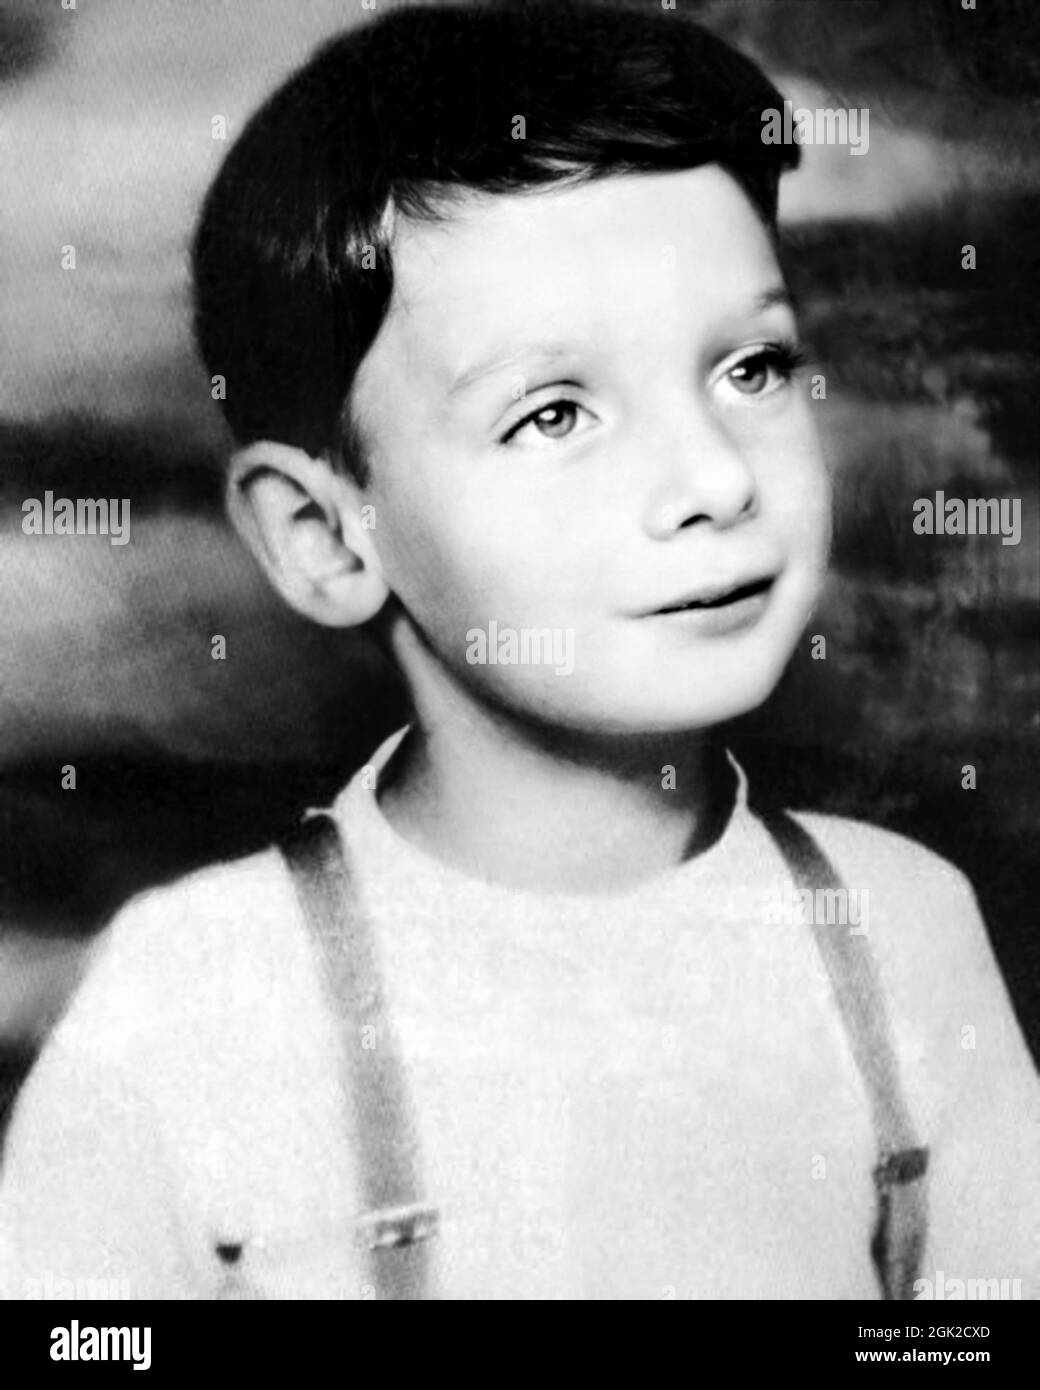 1949 c. , New York , Etats-Unis : le célèbre chanteur américain , compositeur et producteur BARRY MANILOW ( né le 17 juin 1943 ) quand était un jeune garçon de 6 ans . Photographe inconnu. - HISTOIRE - FOTO STORICHE - Personalità da bambino Bambini da giovane - personnalités quand était jeune - FANTAZIA - ENFANCE - BAMBINO - BAMBINI - ENFANTS - ENFANT - MUSIQUE POP - MUSICA - cantante - COMPORE - ATTORE - ACTEUR - ARCHIVIO GBB Banque D'Images